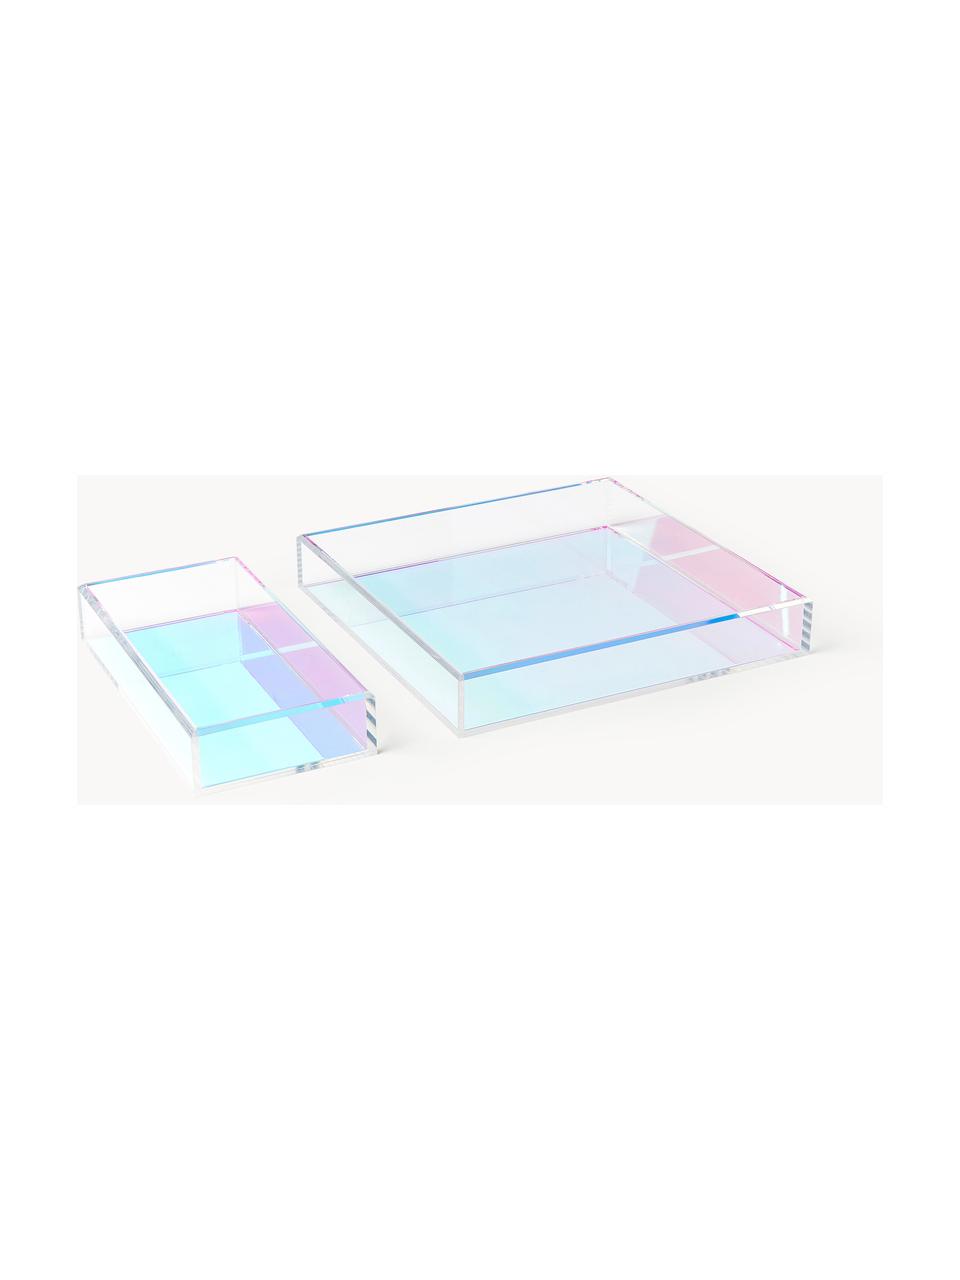 Deko-Tabletts Yuki, 2er-Set, Acrylglas, Bunt, Set mit verschiedenen Größen